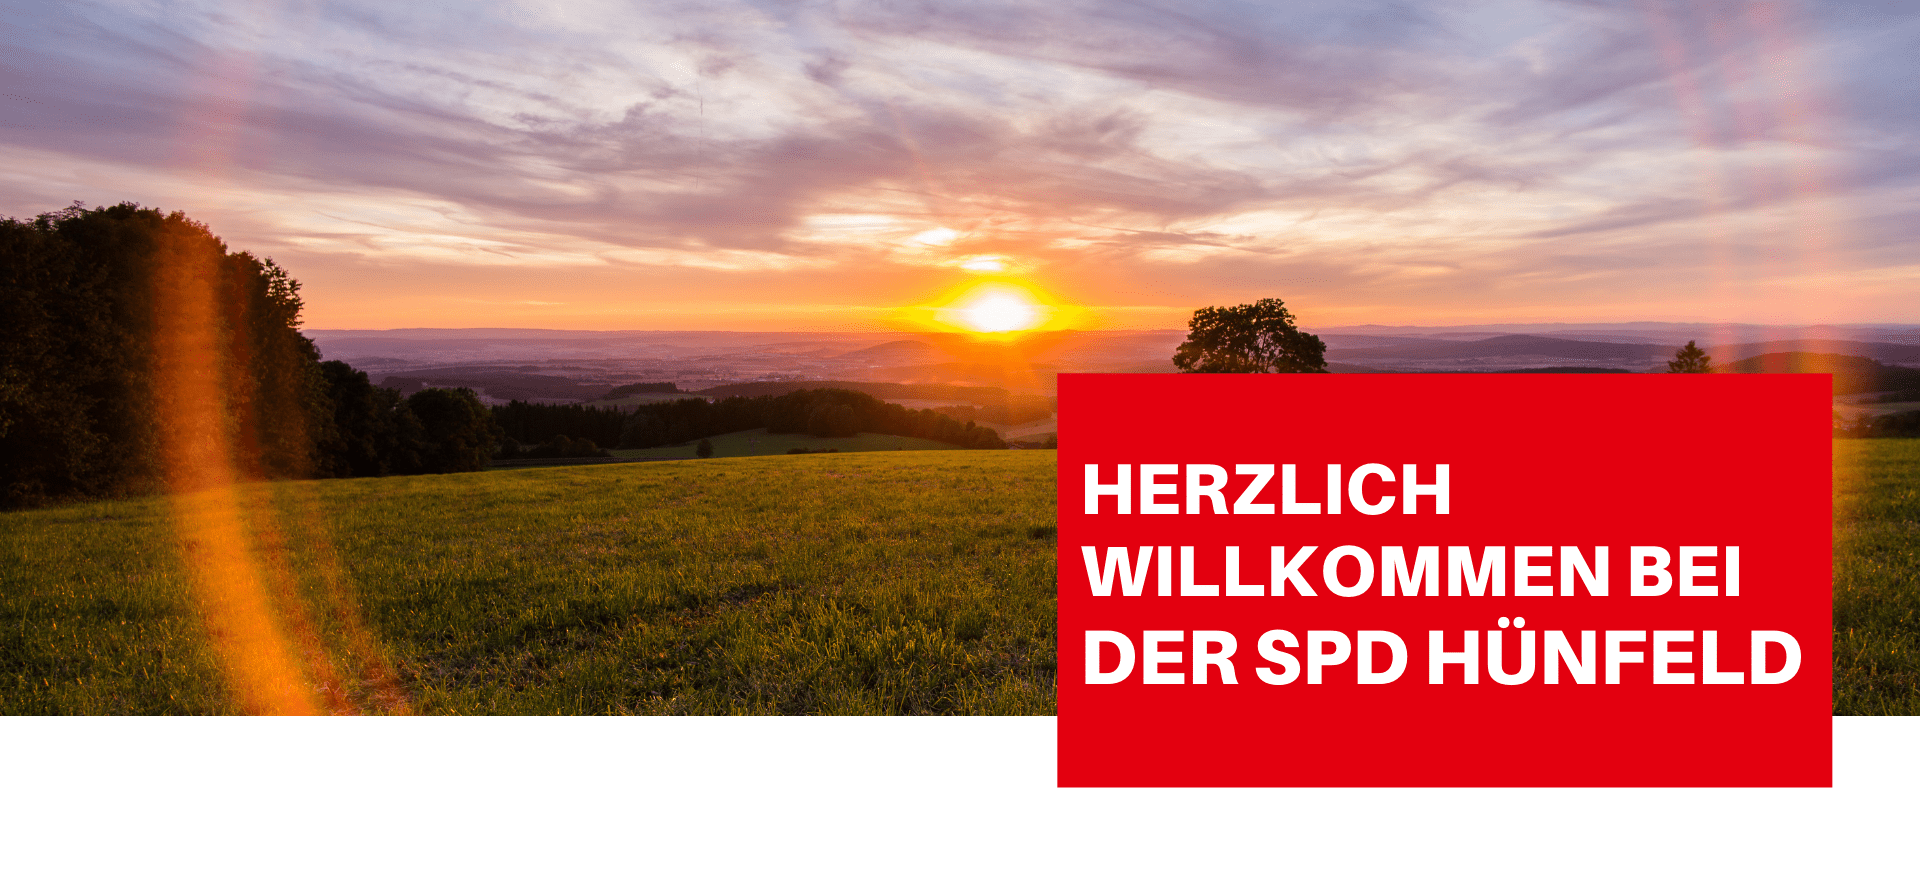 SPD-Hünfeld